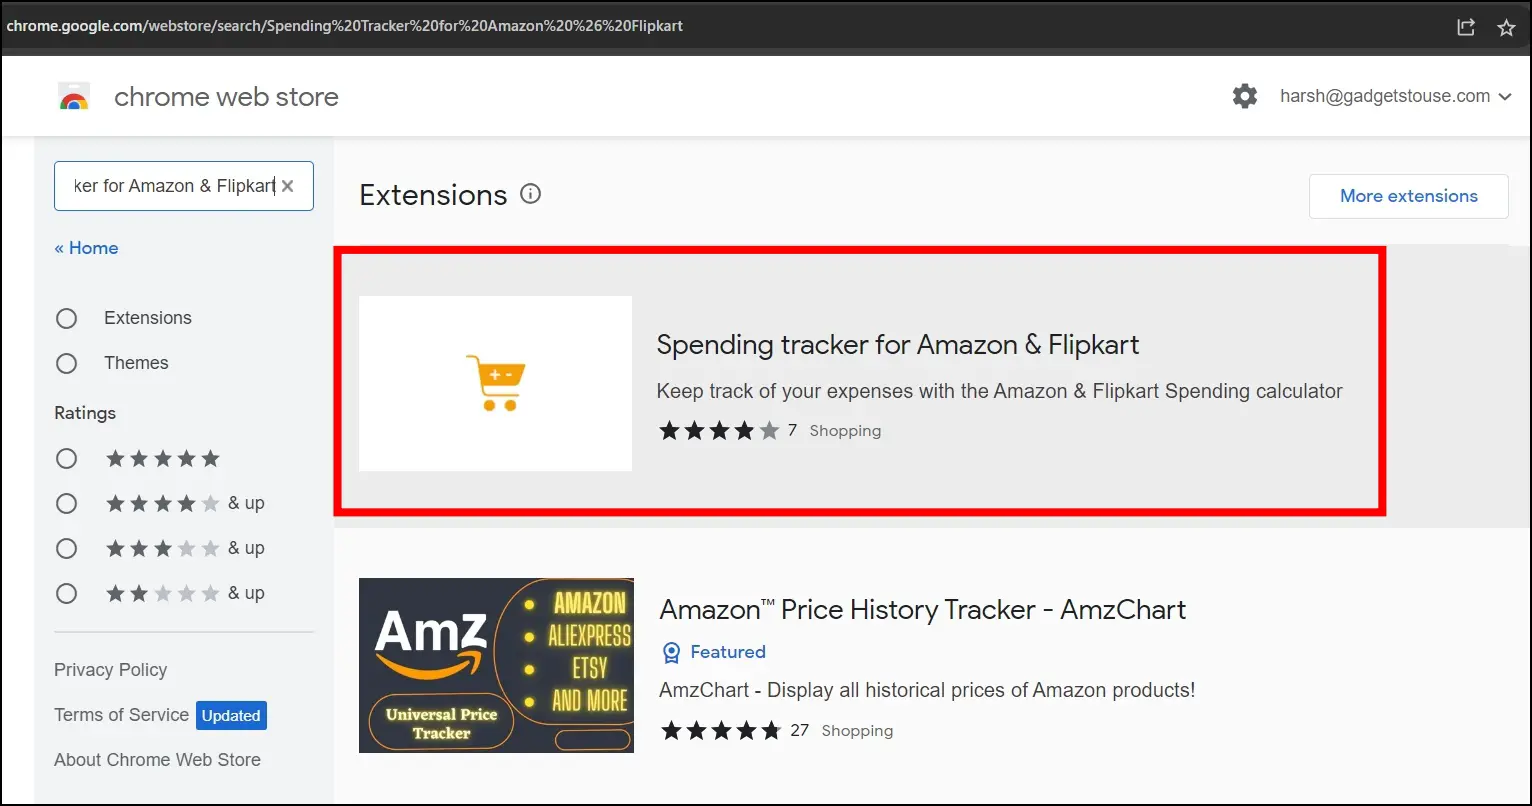 Using the "Spending Tracker for Amazon & Flipkart" Add-on